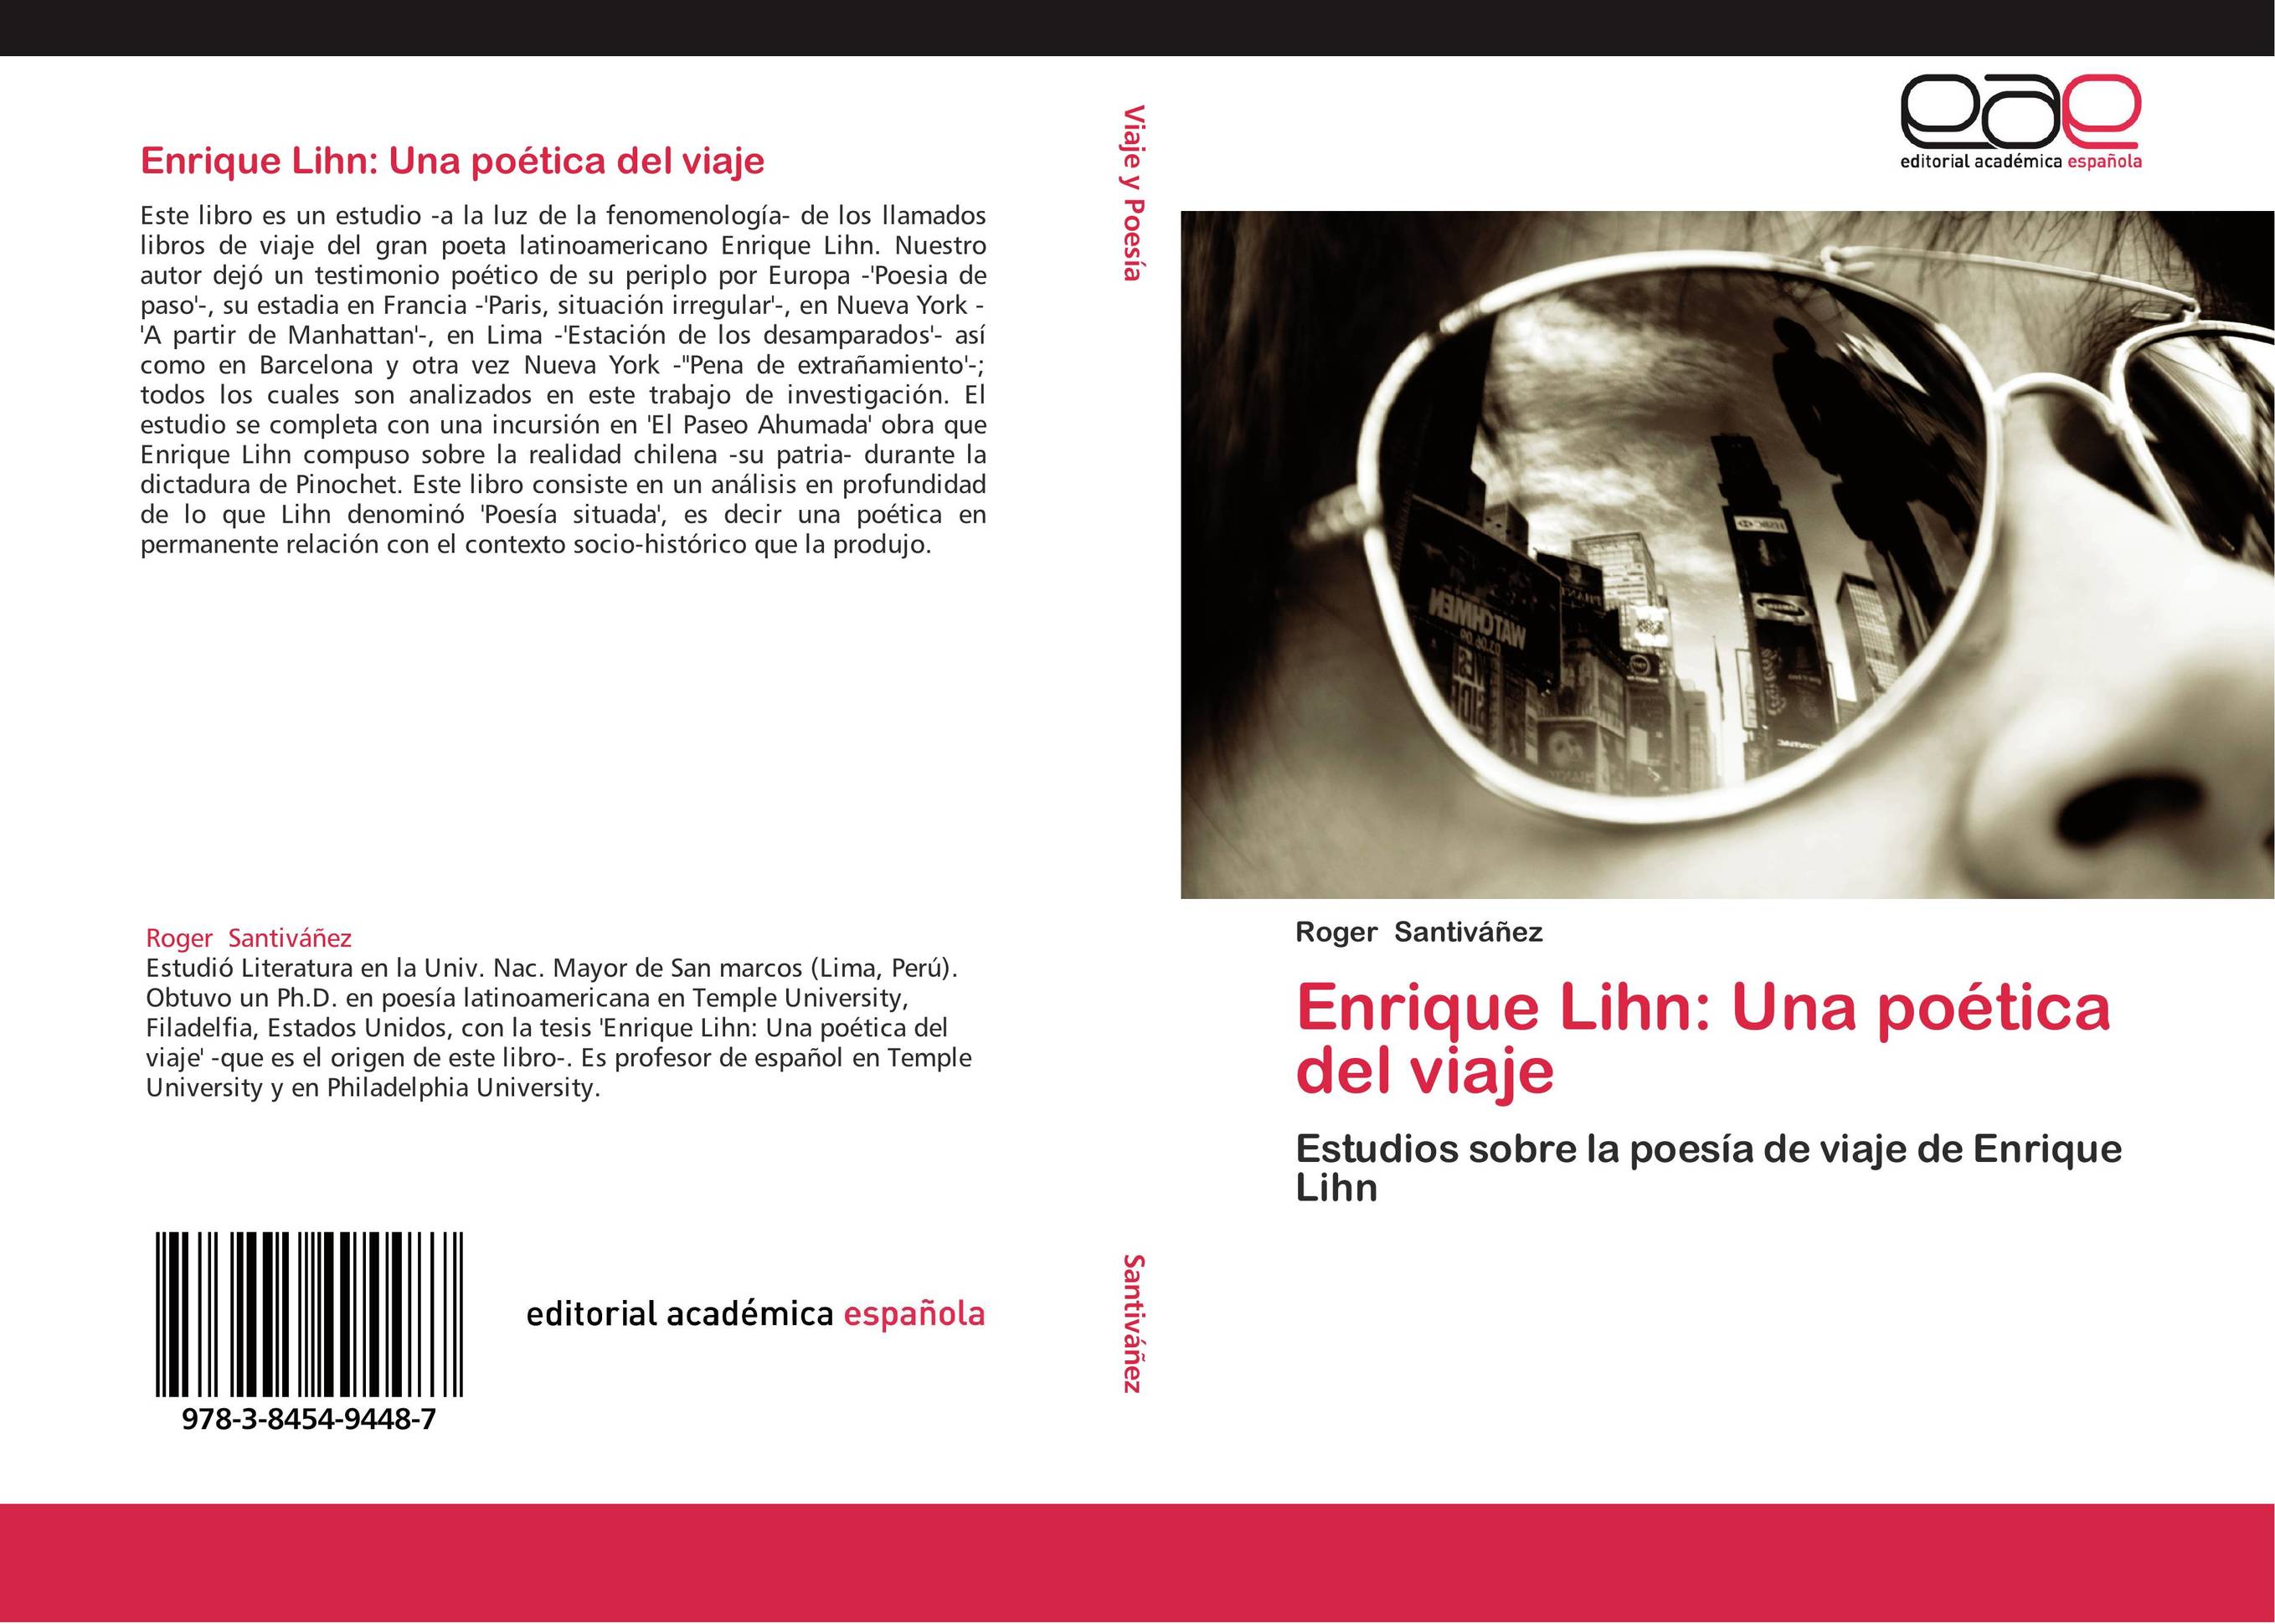 Enrique Lihn: Una poética del viaje